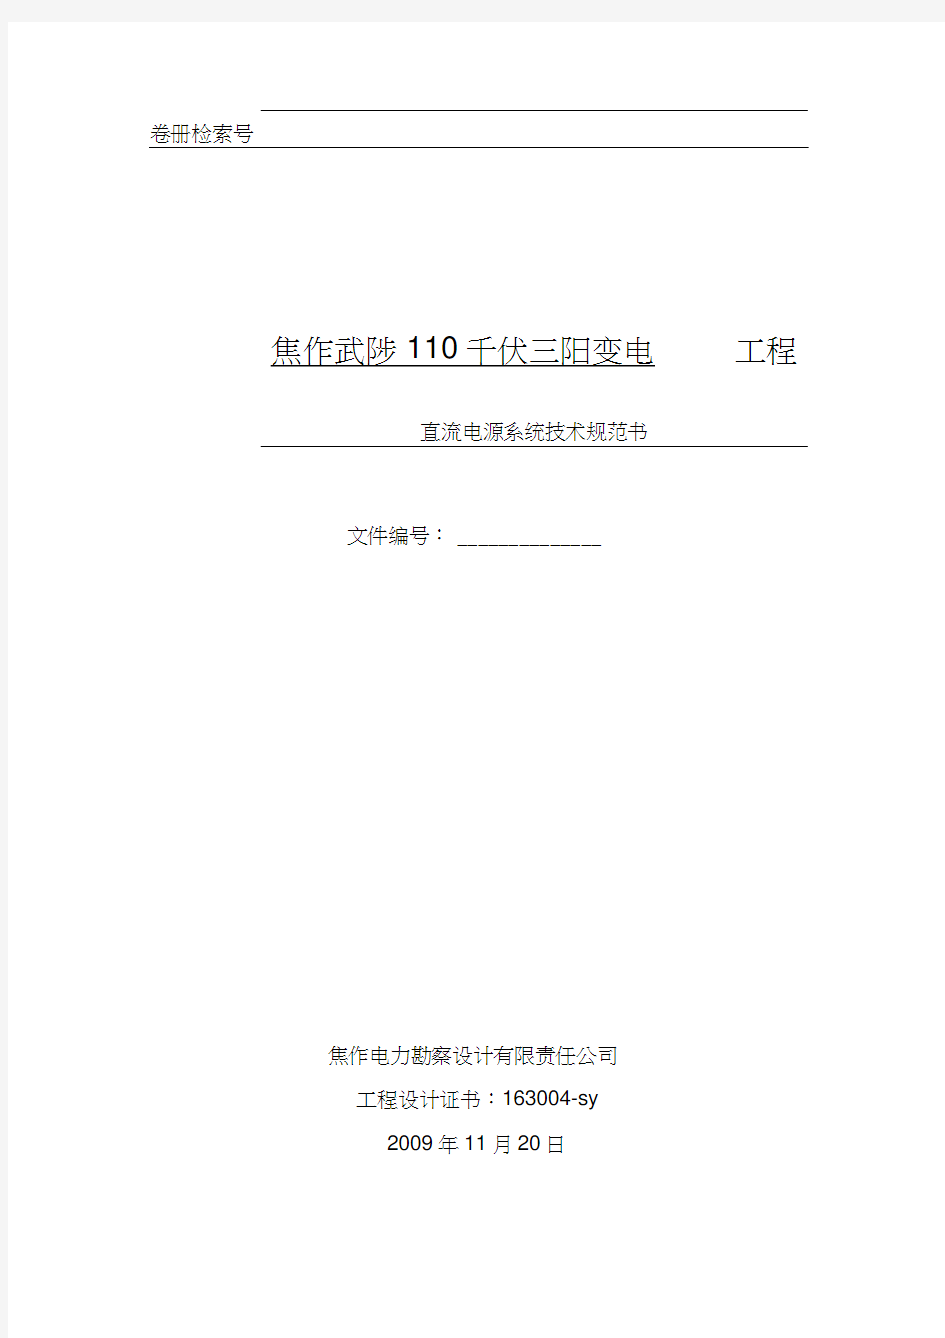 焦作三阳直流系统技术规范书(20201119122600)